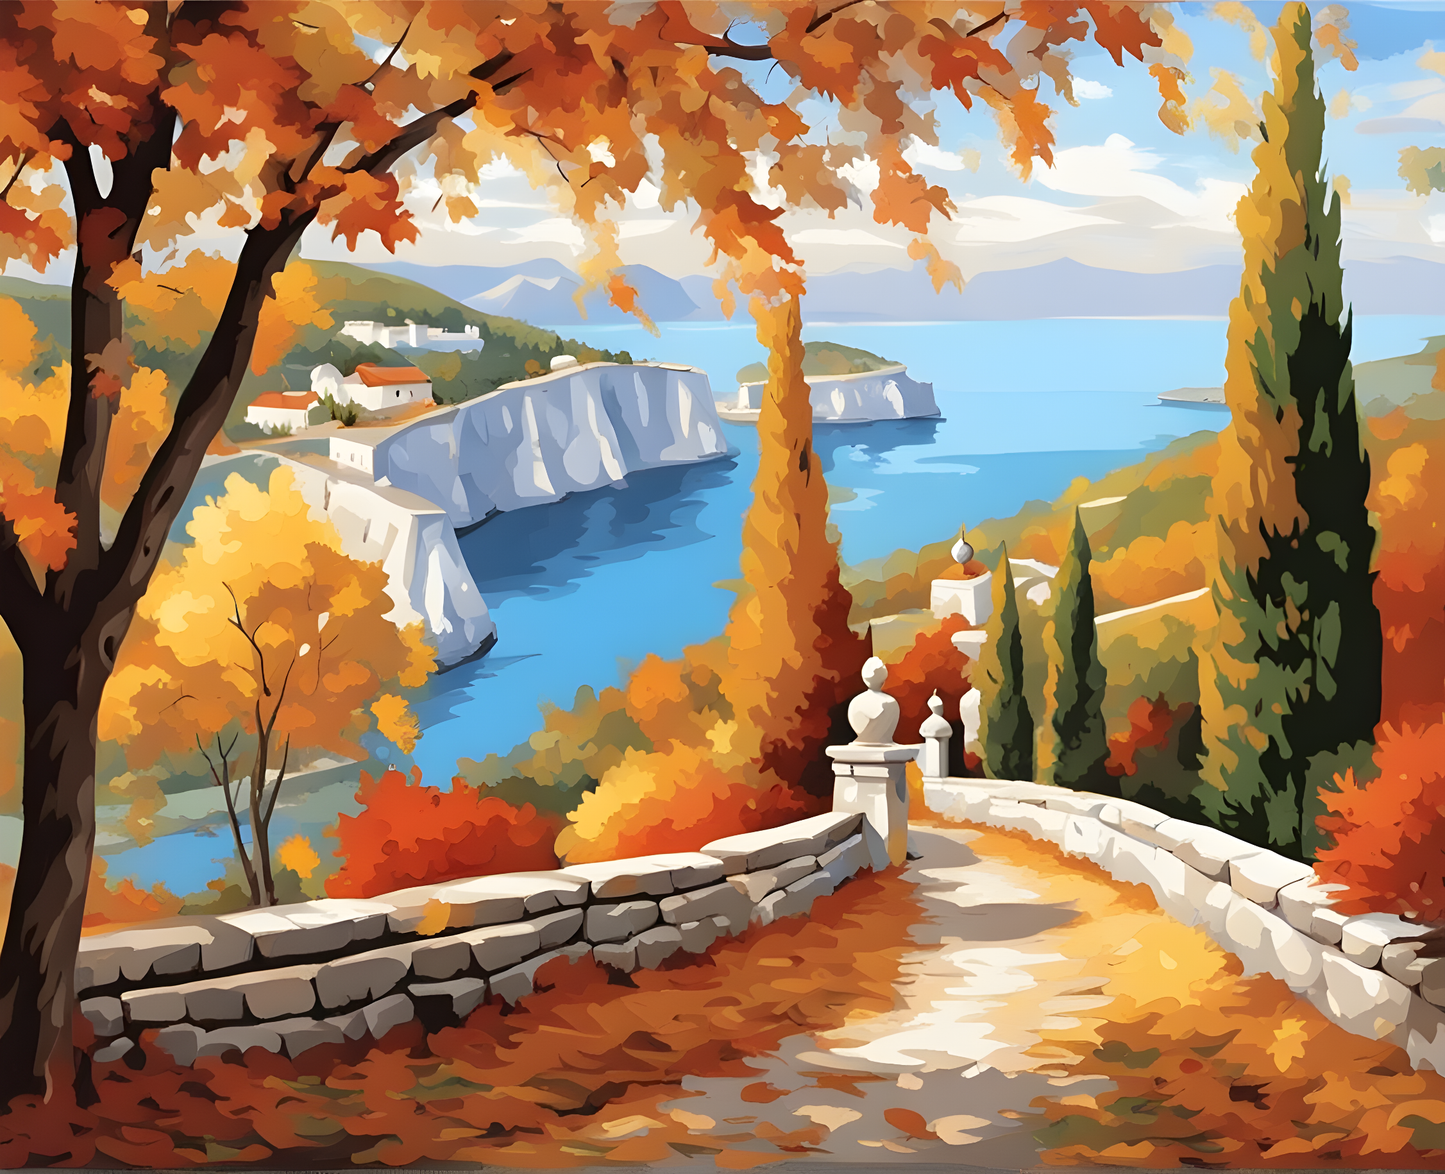 Crimea at Autumn - Van-Go Paint-By-Number Kit